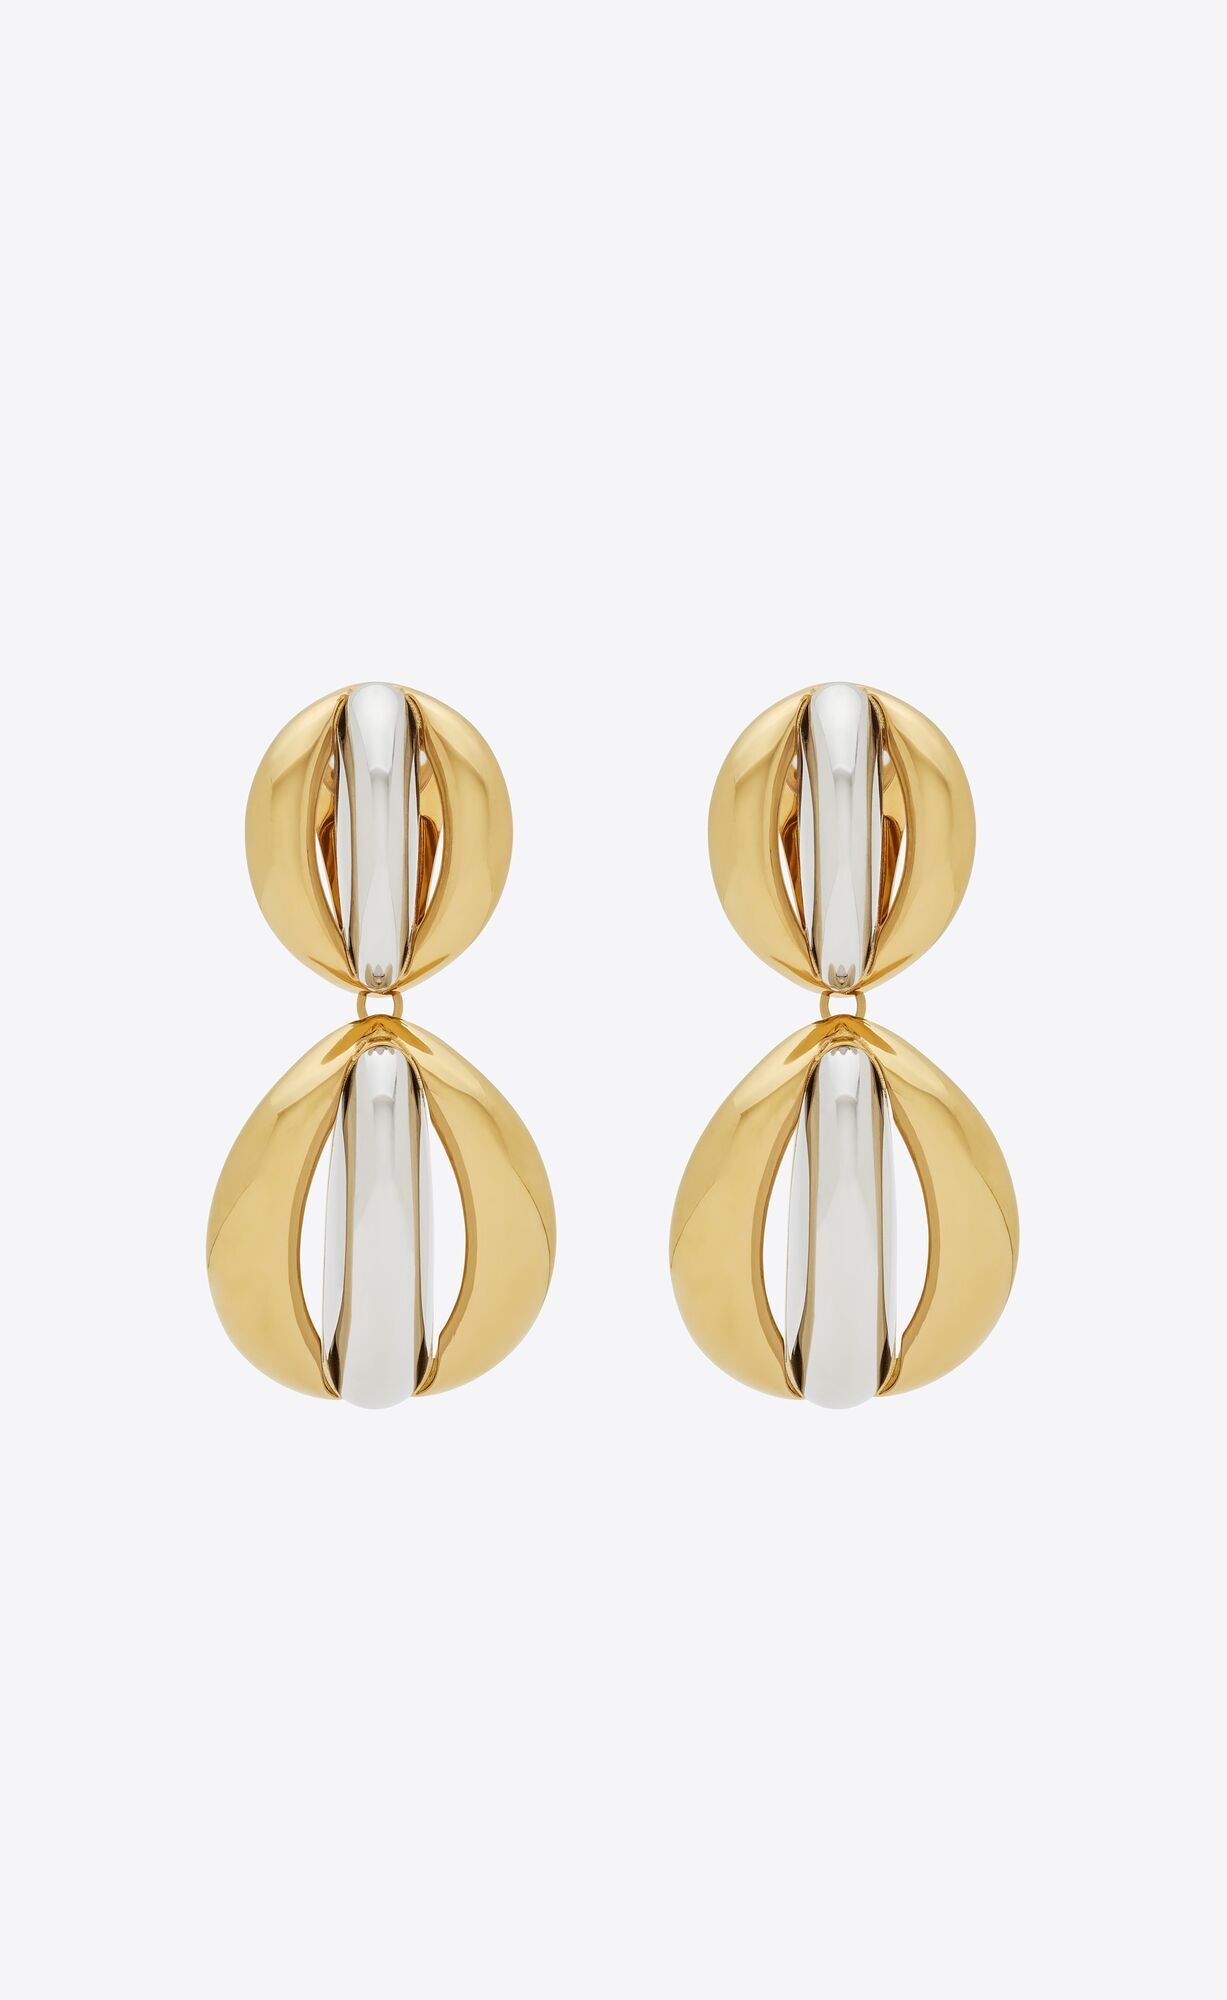 mandarin earrings in metal | Saint Laurent Inc. (Global)